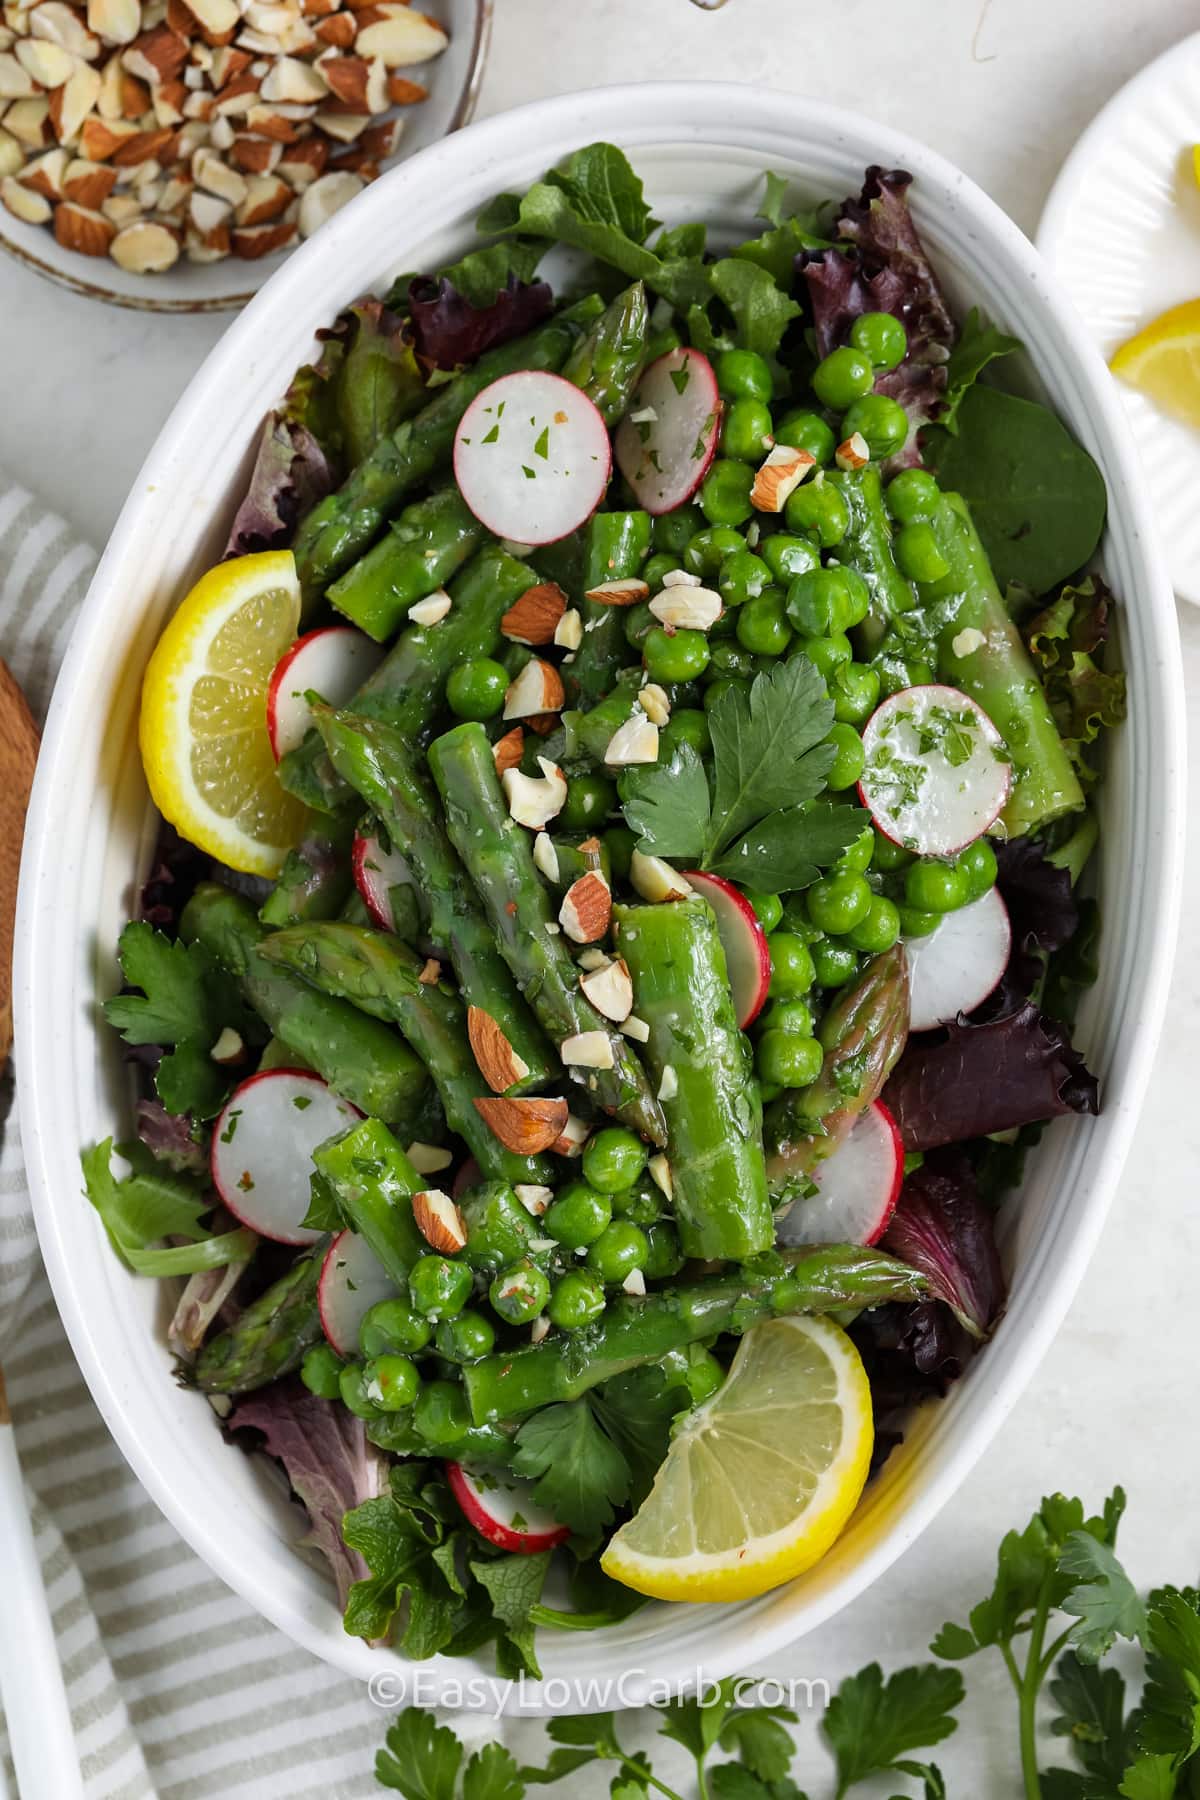 A prepared asparagus salad in a bowl